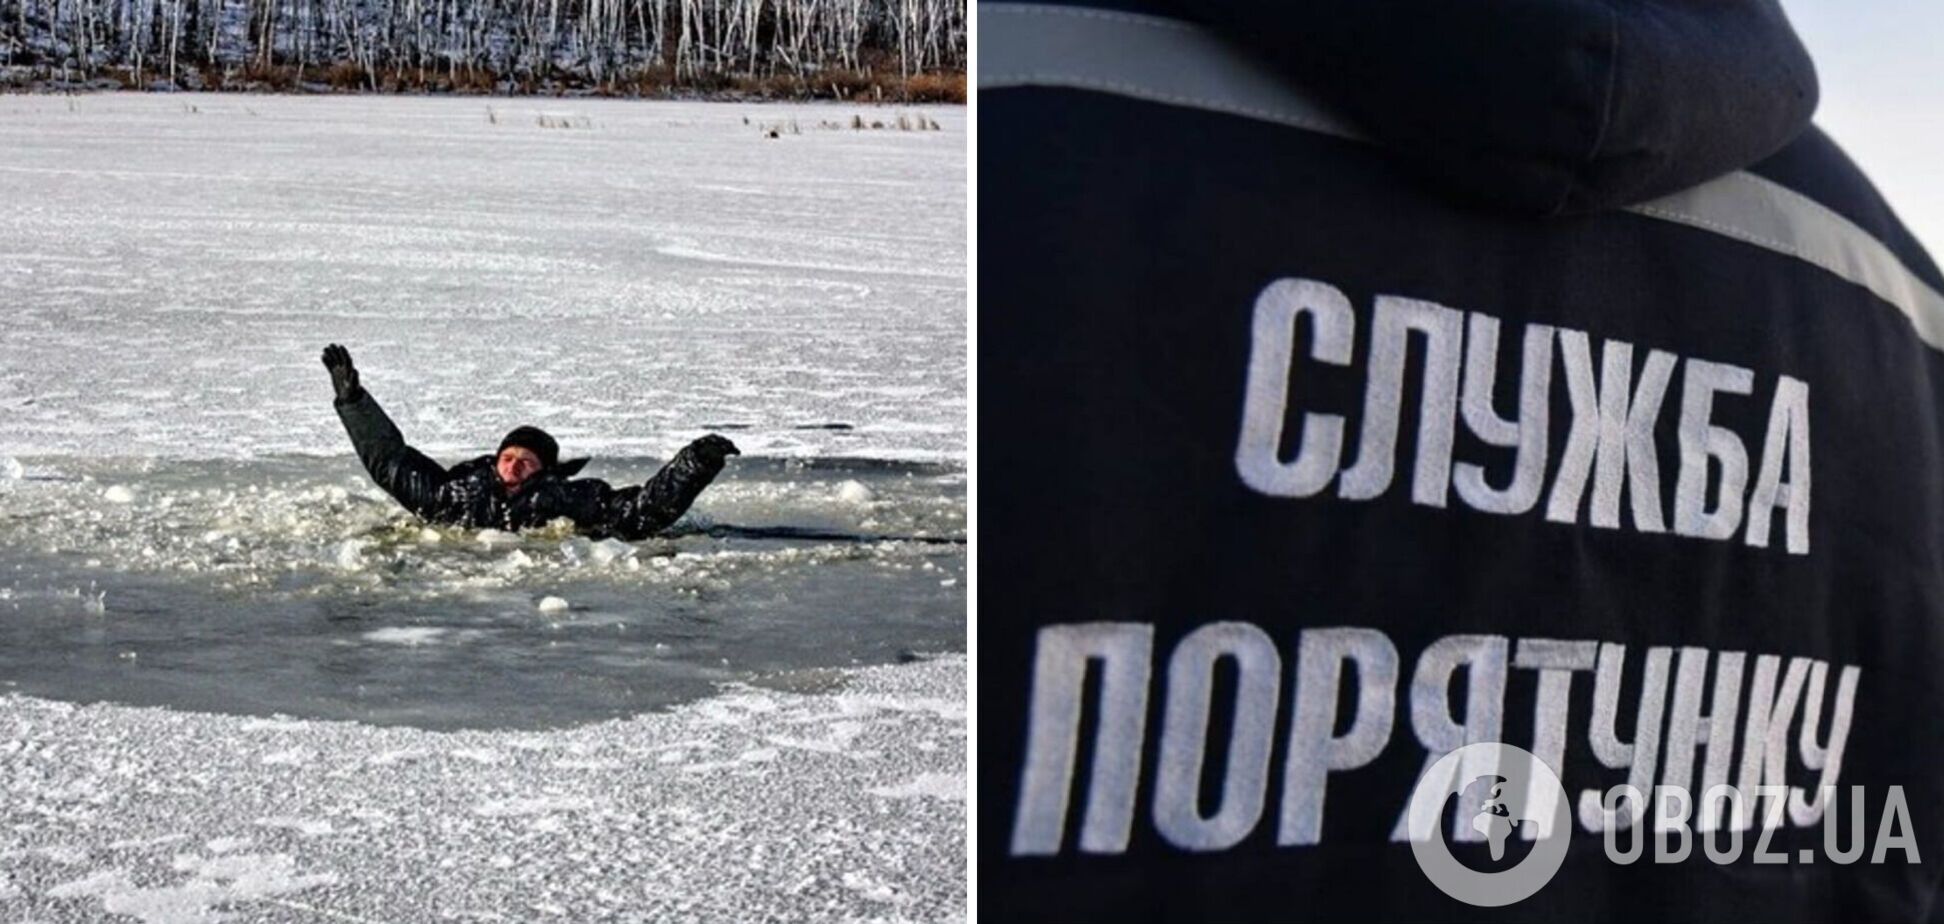 На Днепропетровщине во время рыбалки под лед провалились двое мужчин, один утонул. Фото и детали трагедии